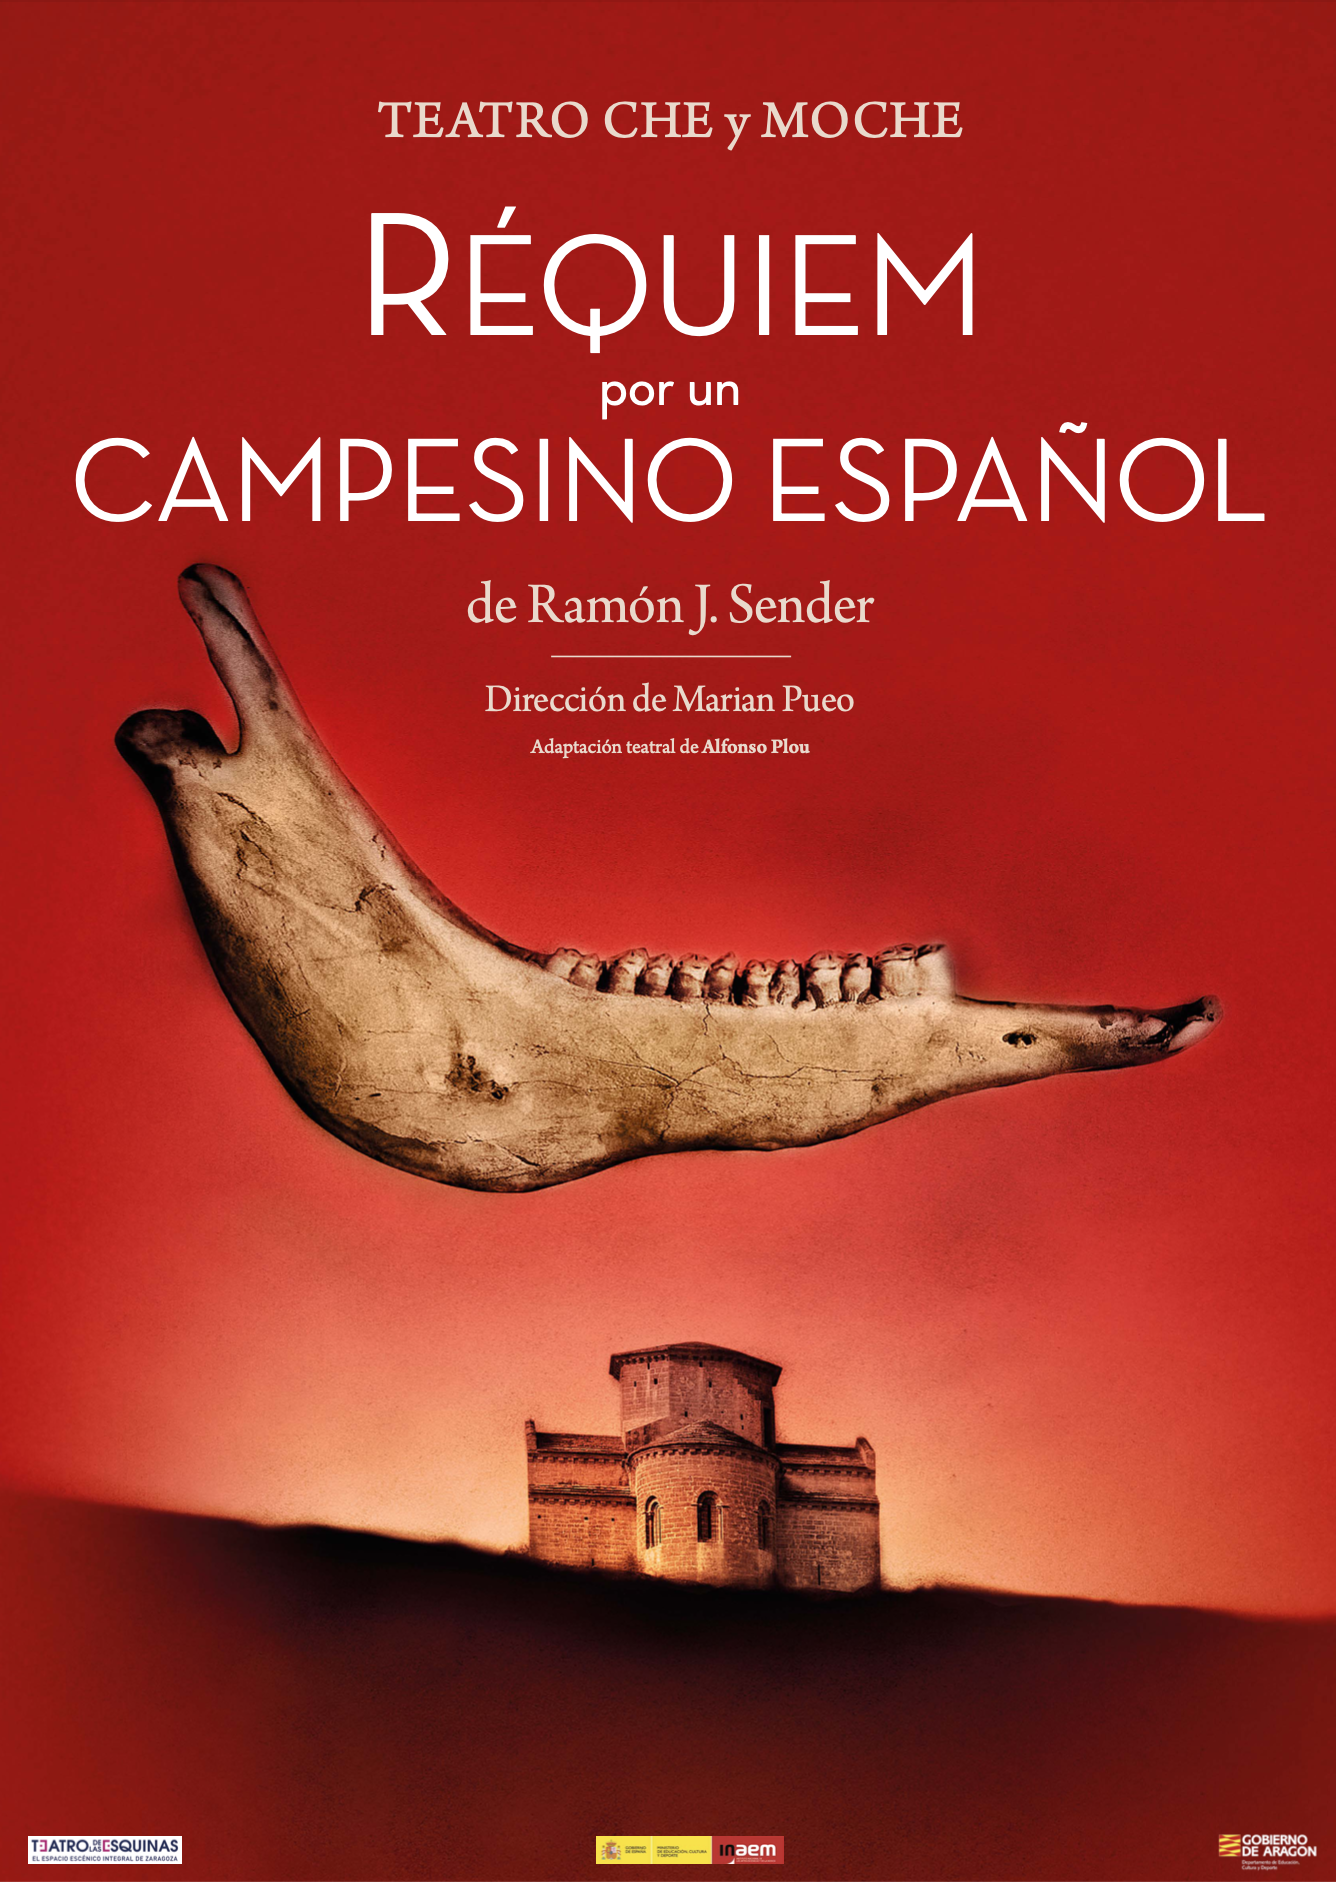  Dossier de "Requiem por un campesino español" Ramón J Sender